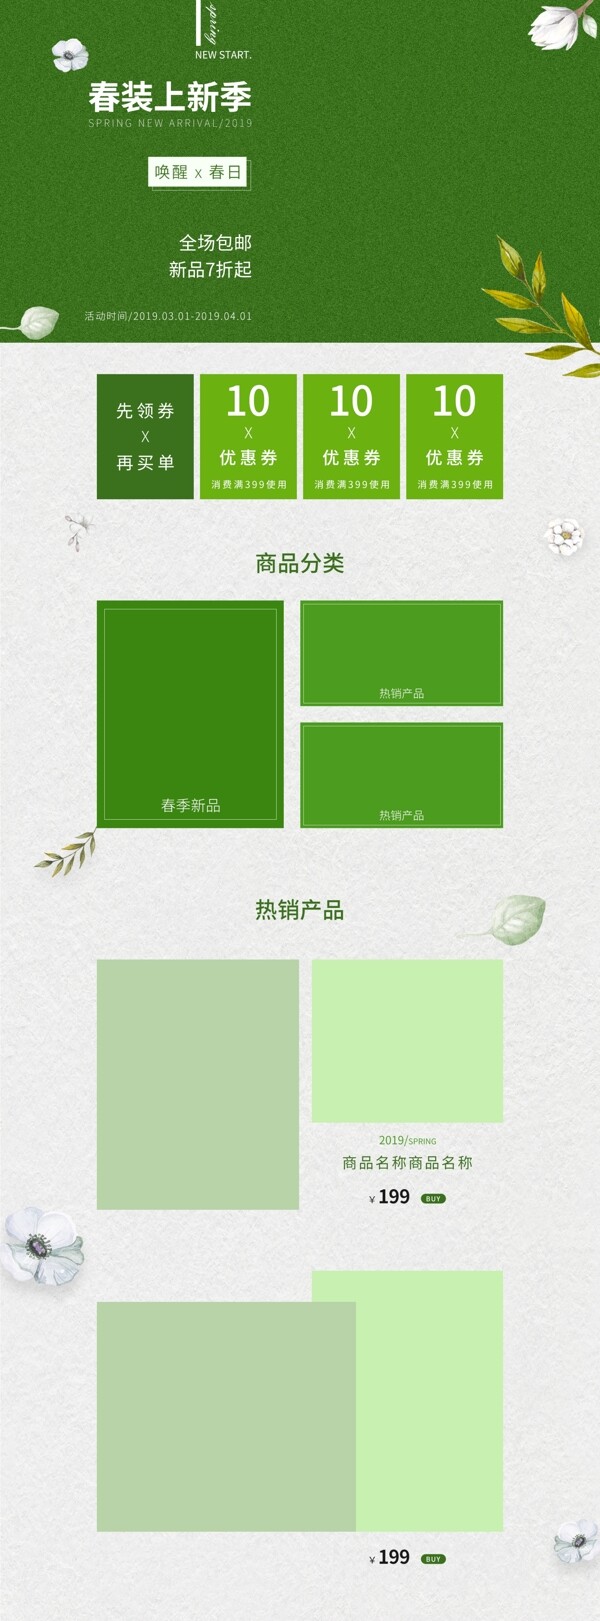 天猫淘宝服装服饰绿色简约春季清新首页模板